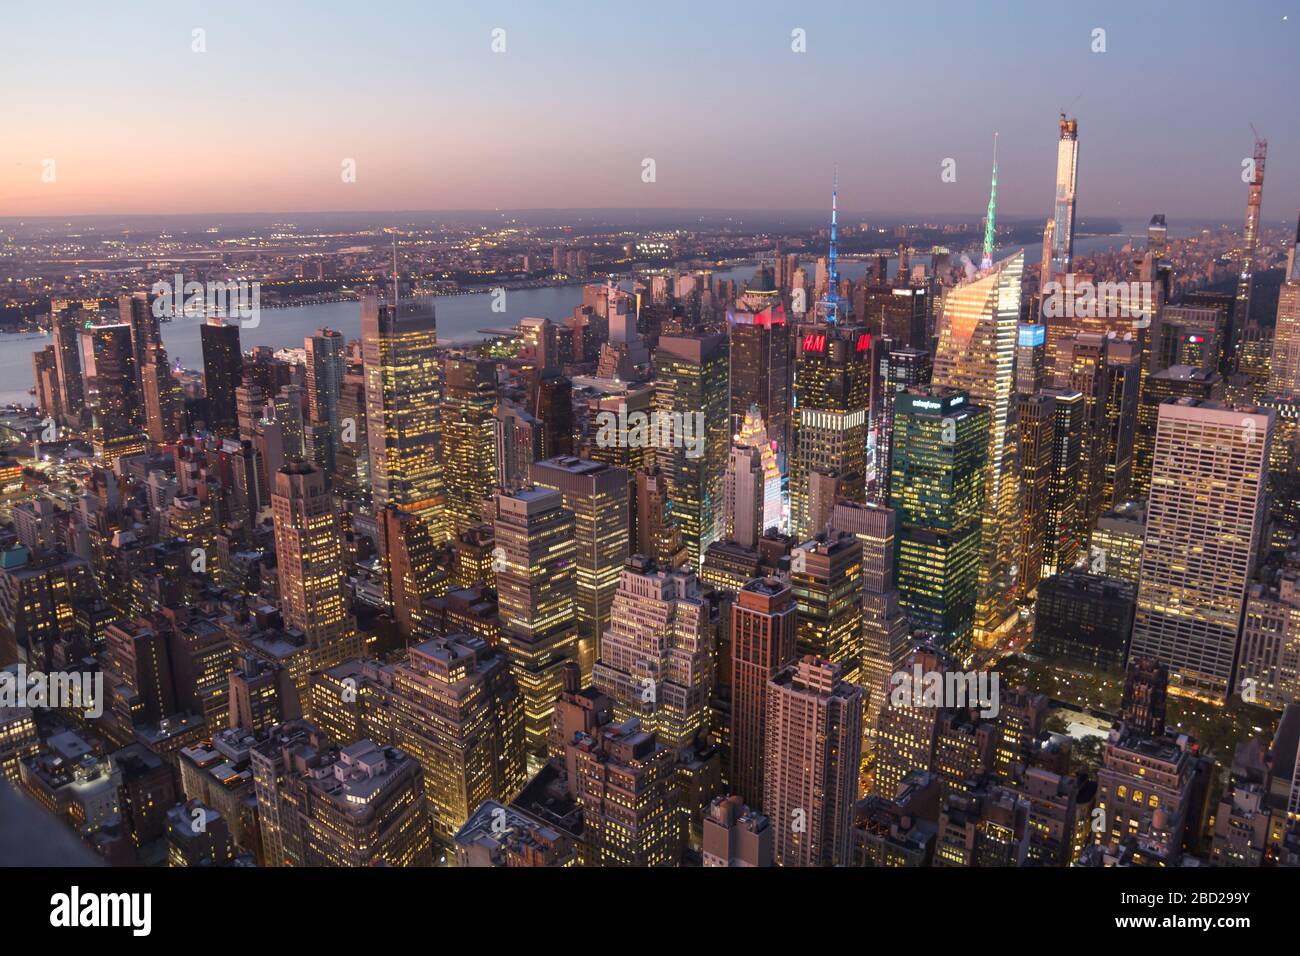 New York, Stati Uniti: 16 ottobre 2019: Vista della città di New York dall'alto dell'Empire state Building, skyline del grattacielo al tramonto Foto Stock